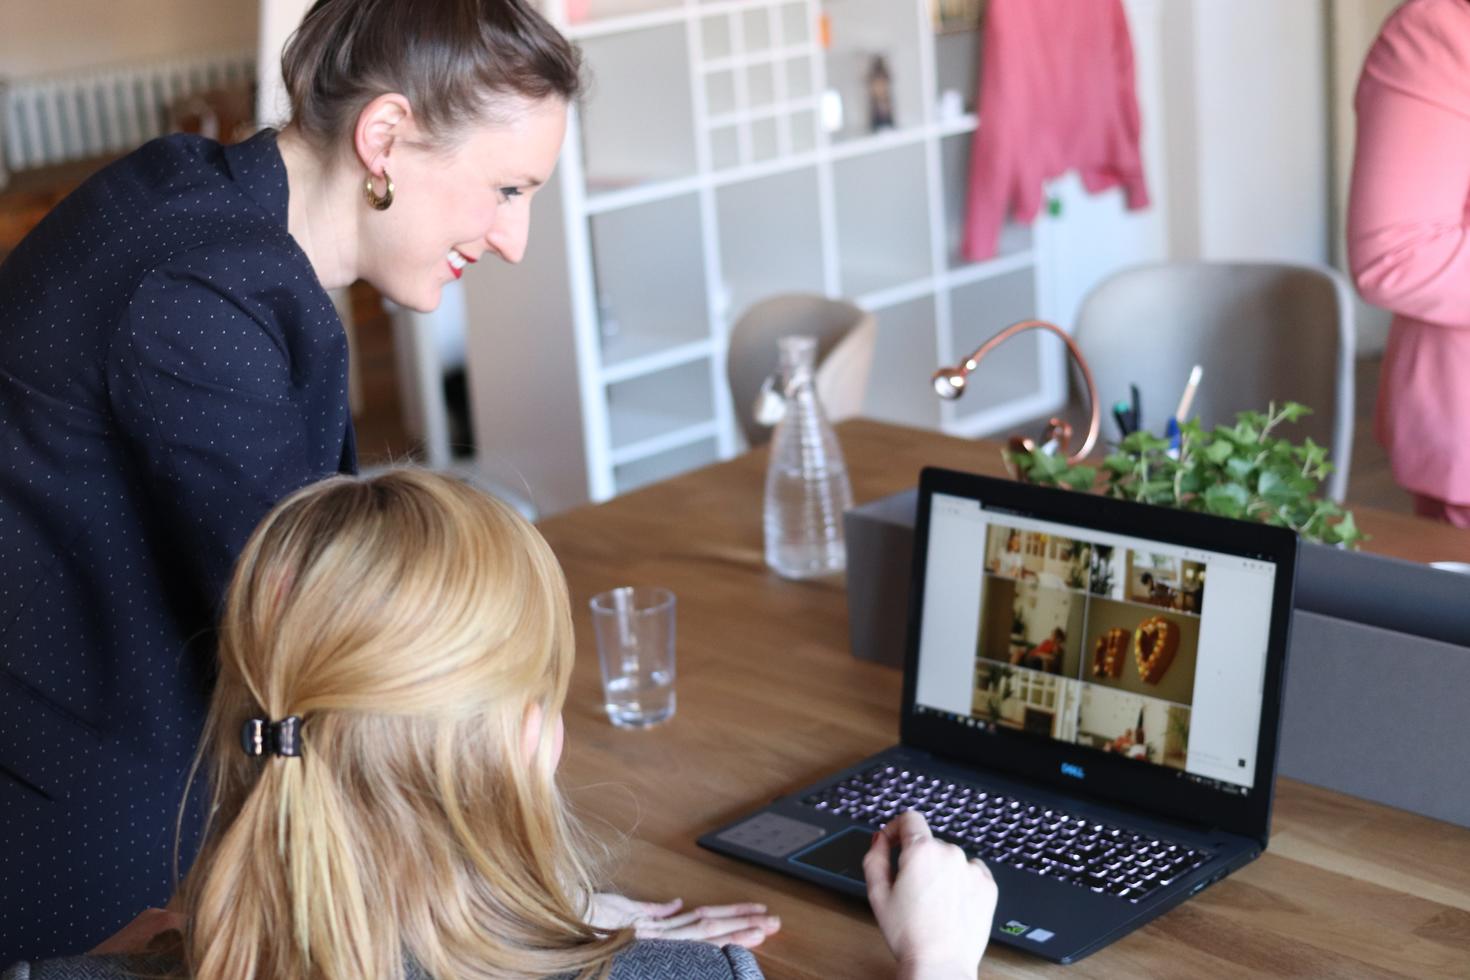 Des collègues de travail regardent l'écran d'un ordinateur portable pendant une réunion virtuelle.